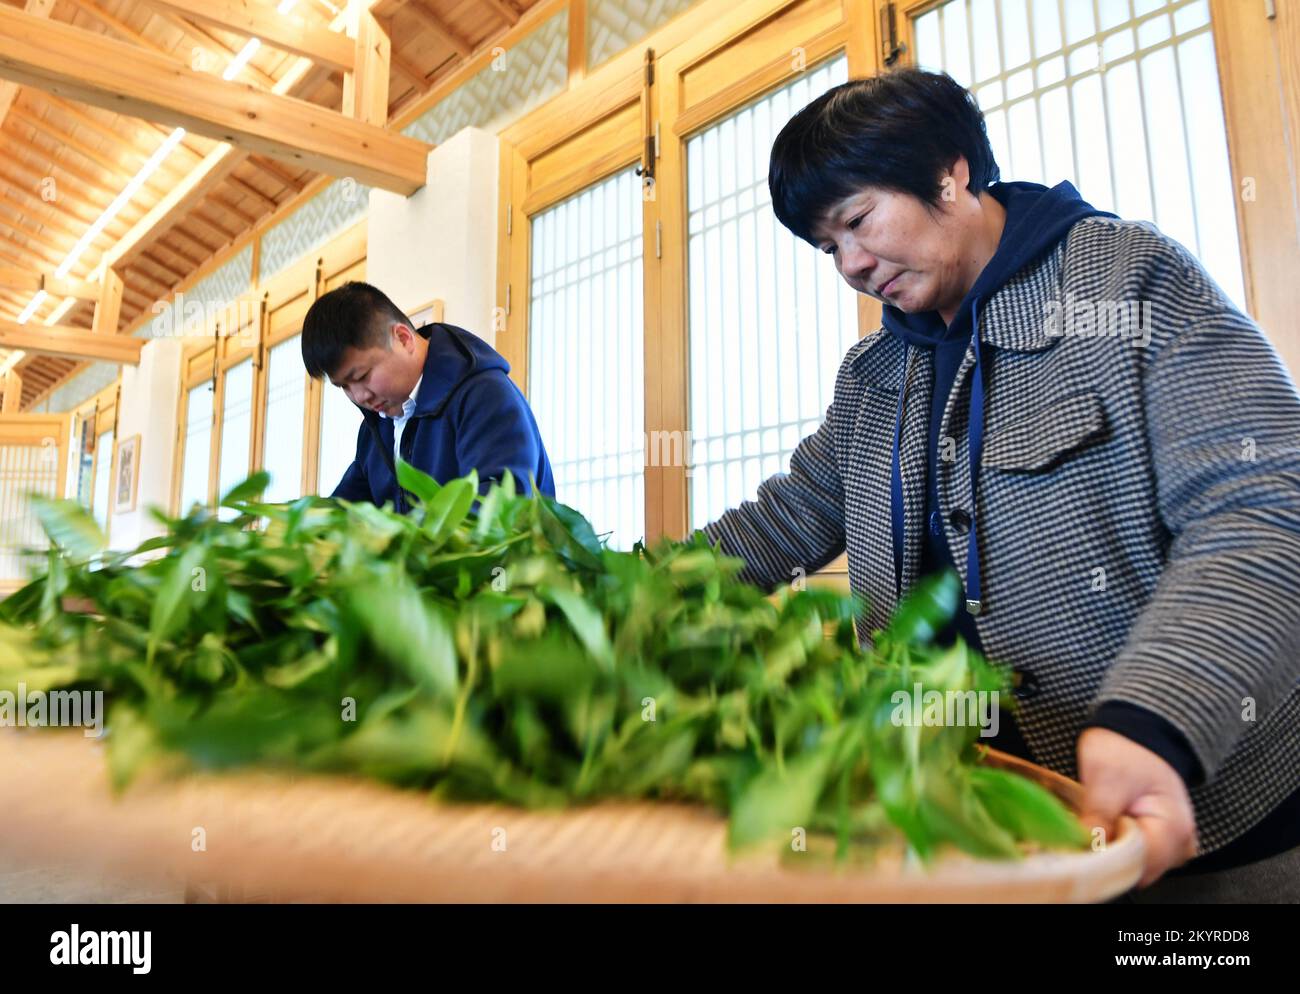 WUYISHAN, 2 décembre 2022 (Xinhua) -- You Yuqiong (R), la seule femme héritante de la technique de fabrication du thé de roche de Wuyi, instruit son fils Fang Zhou dans la technique d'agitation manuelle du thé de roche de Wuyi à Wuyishan, dans la province du Fujian du sud-est de la Chine, 1 décembre 2022. Wuyishan, la ville natale du thé rock, propose un large éventail de variétés de thé rock. La technique de fabrication du thé de roche Wuyi, une variété spéciale d'oolong avec un goût particulièrement torréfié et un arôme floral et fruité, comprend plus de 10 procédures de transformation, y compris la récolte du thé, le flétrissement, la fixation, la torsion, le séchage et ainsi de suite. Po Banque D'Images